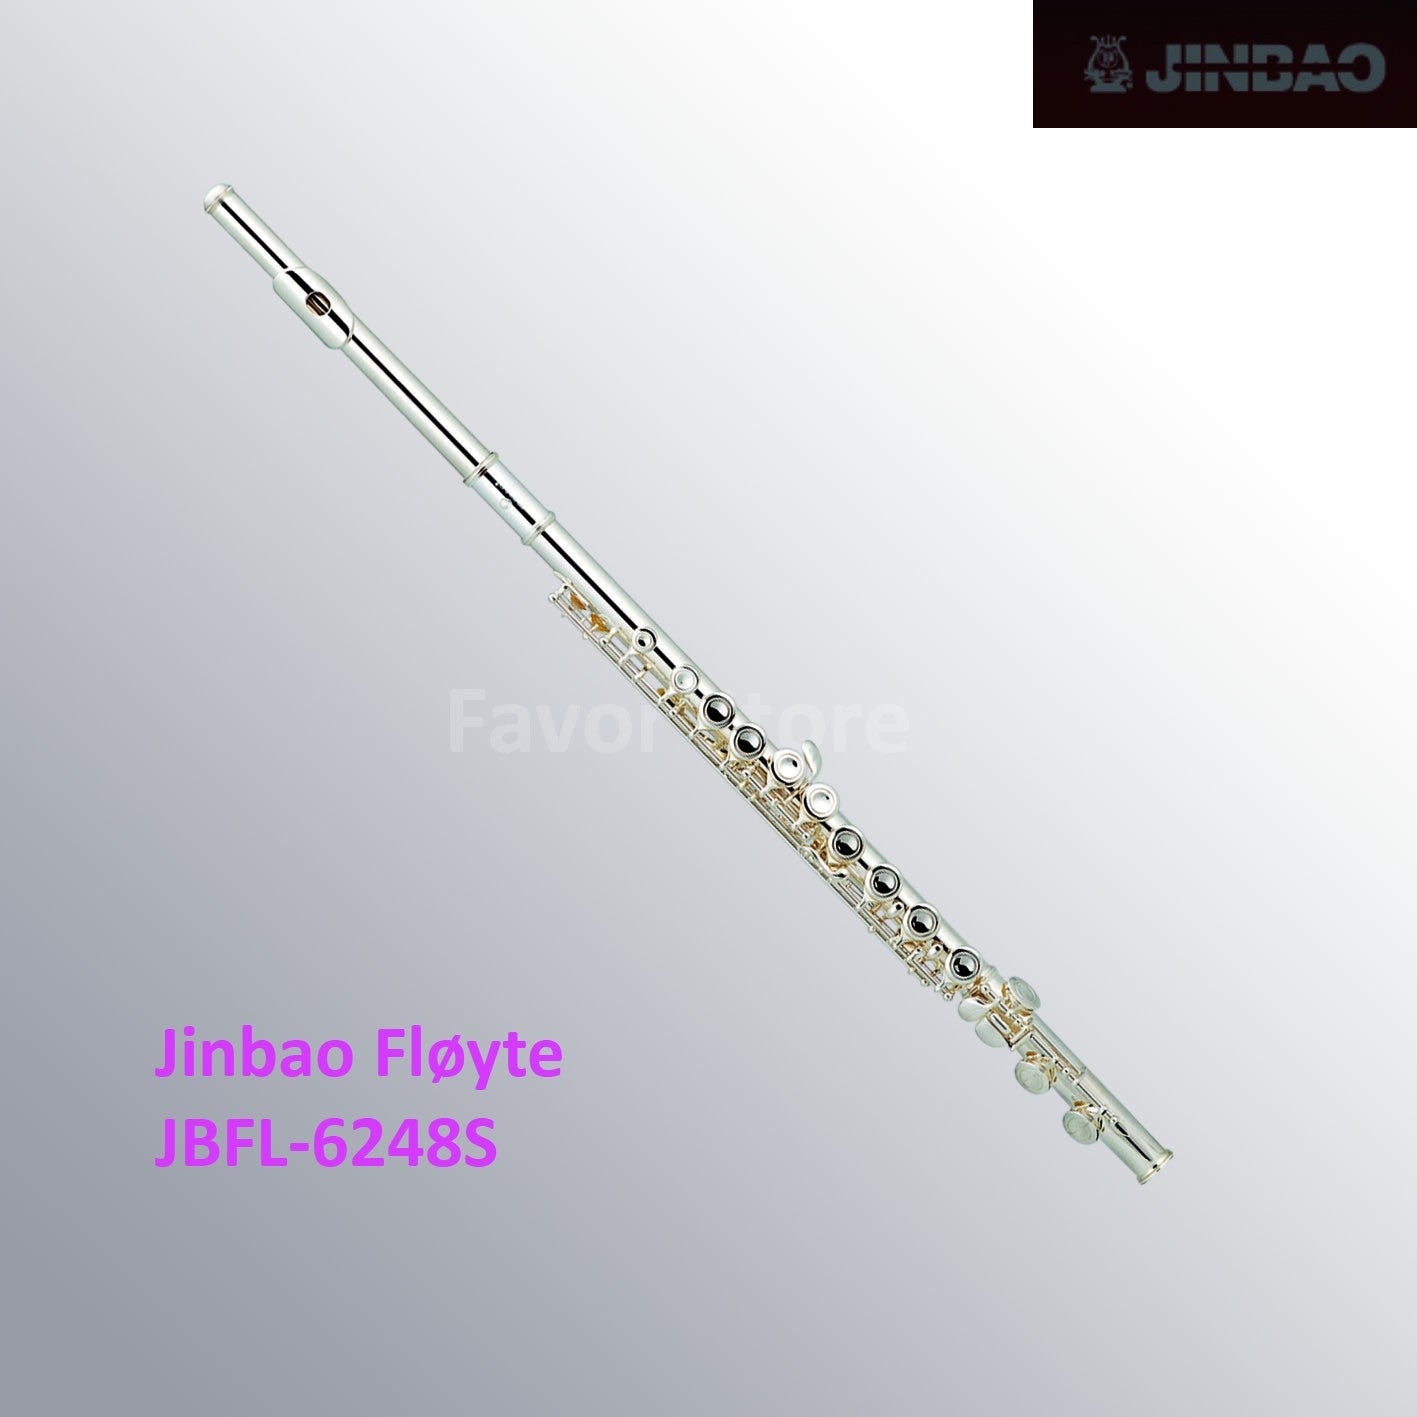 Jinbao Fløyte C, JBFL-6248s